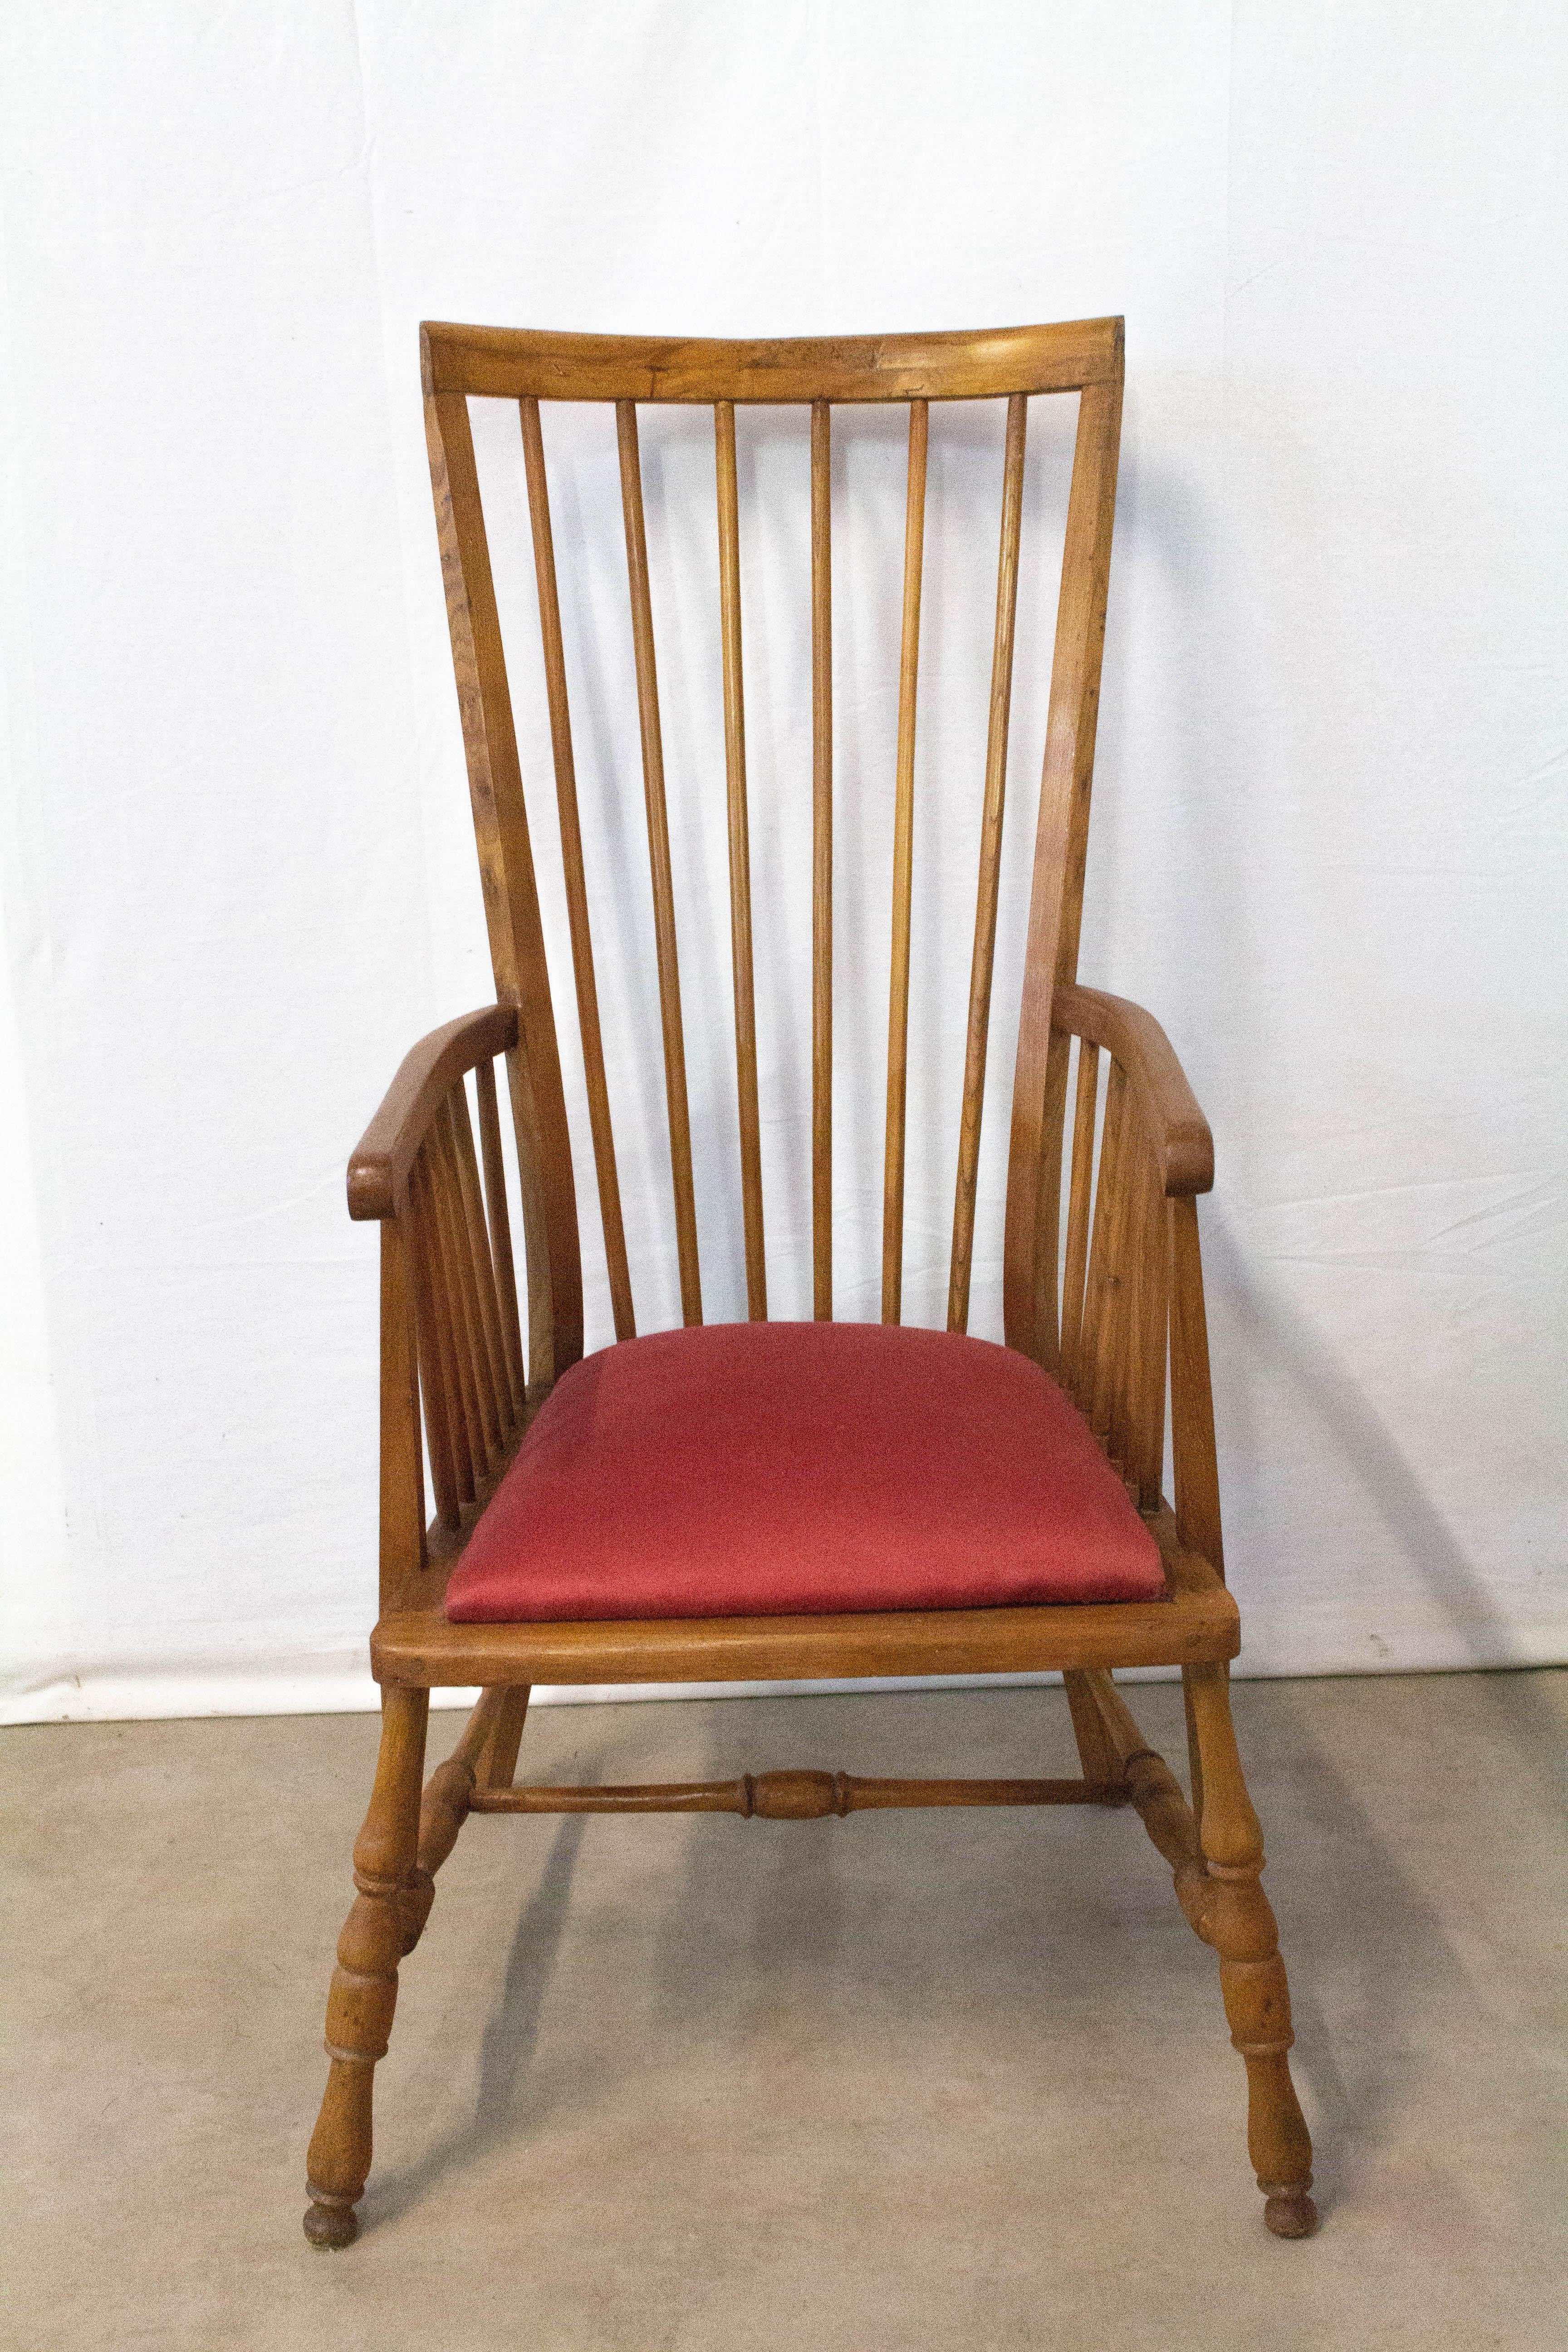 Ulmenstuhl Windsor, Sessel aus der Jahrhundertmitte, um 1950
Schöne Holzarbeiten, siehe Fotos
Ursprünglich war die Sitzfläche mit einem Rohrstock versehen, der durch dieses elegante Kissen ersetzt wurde.
Guter Zustand.